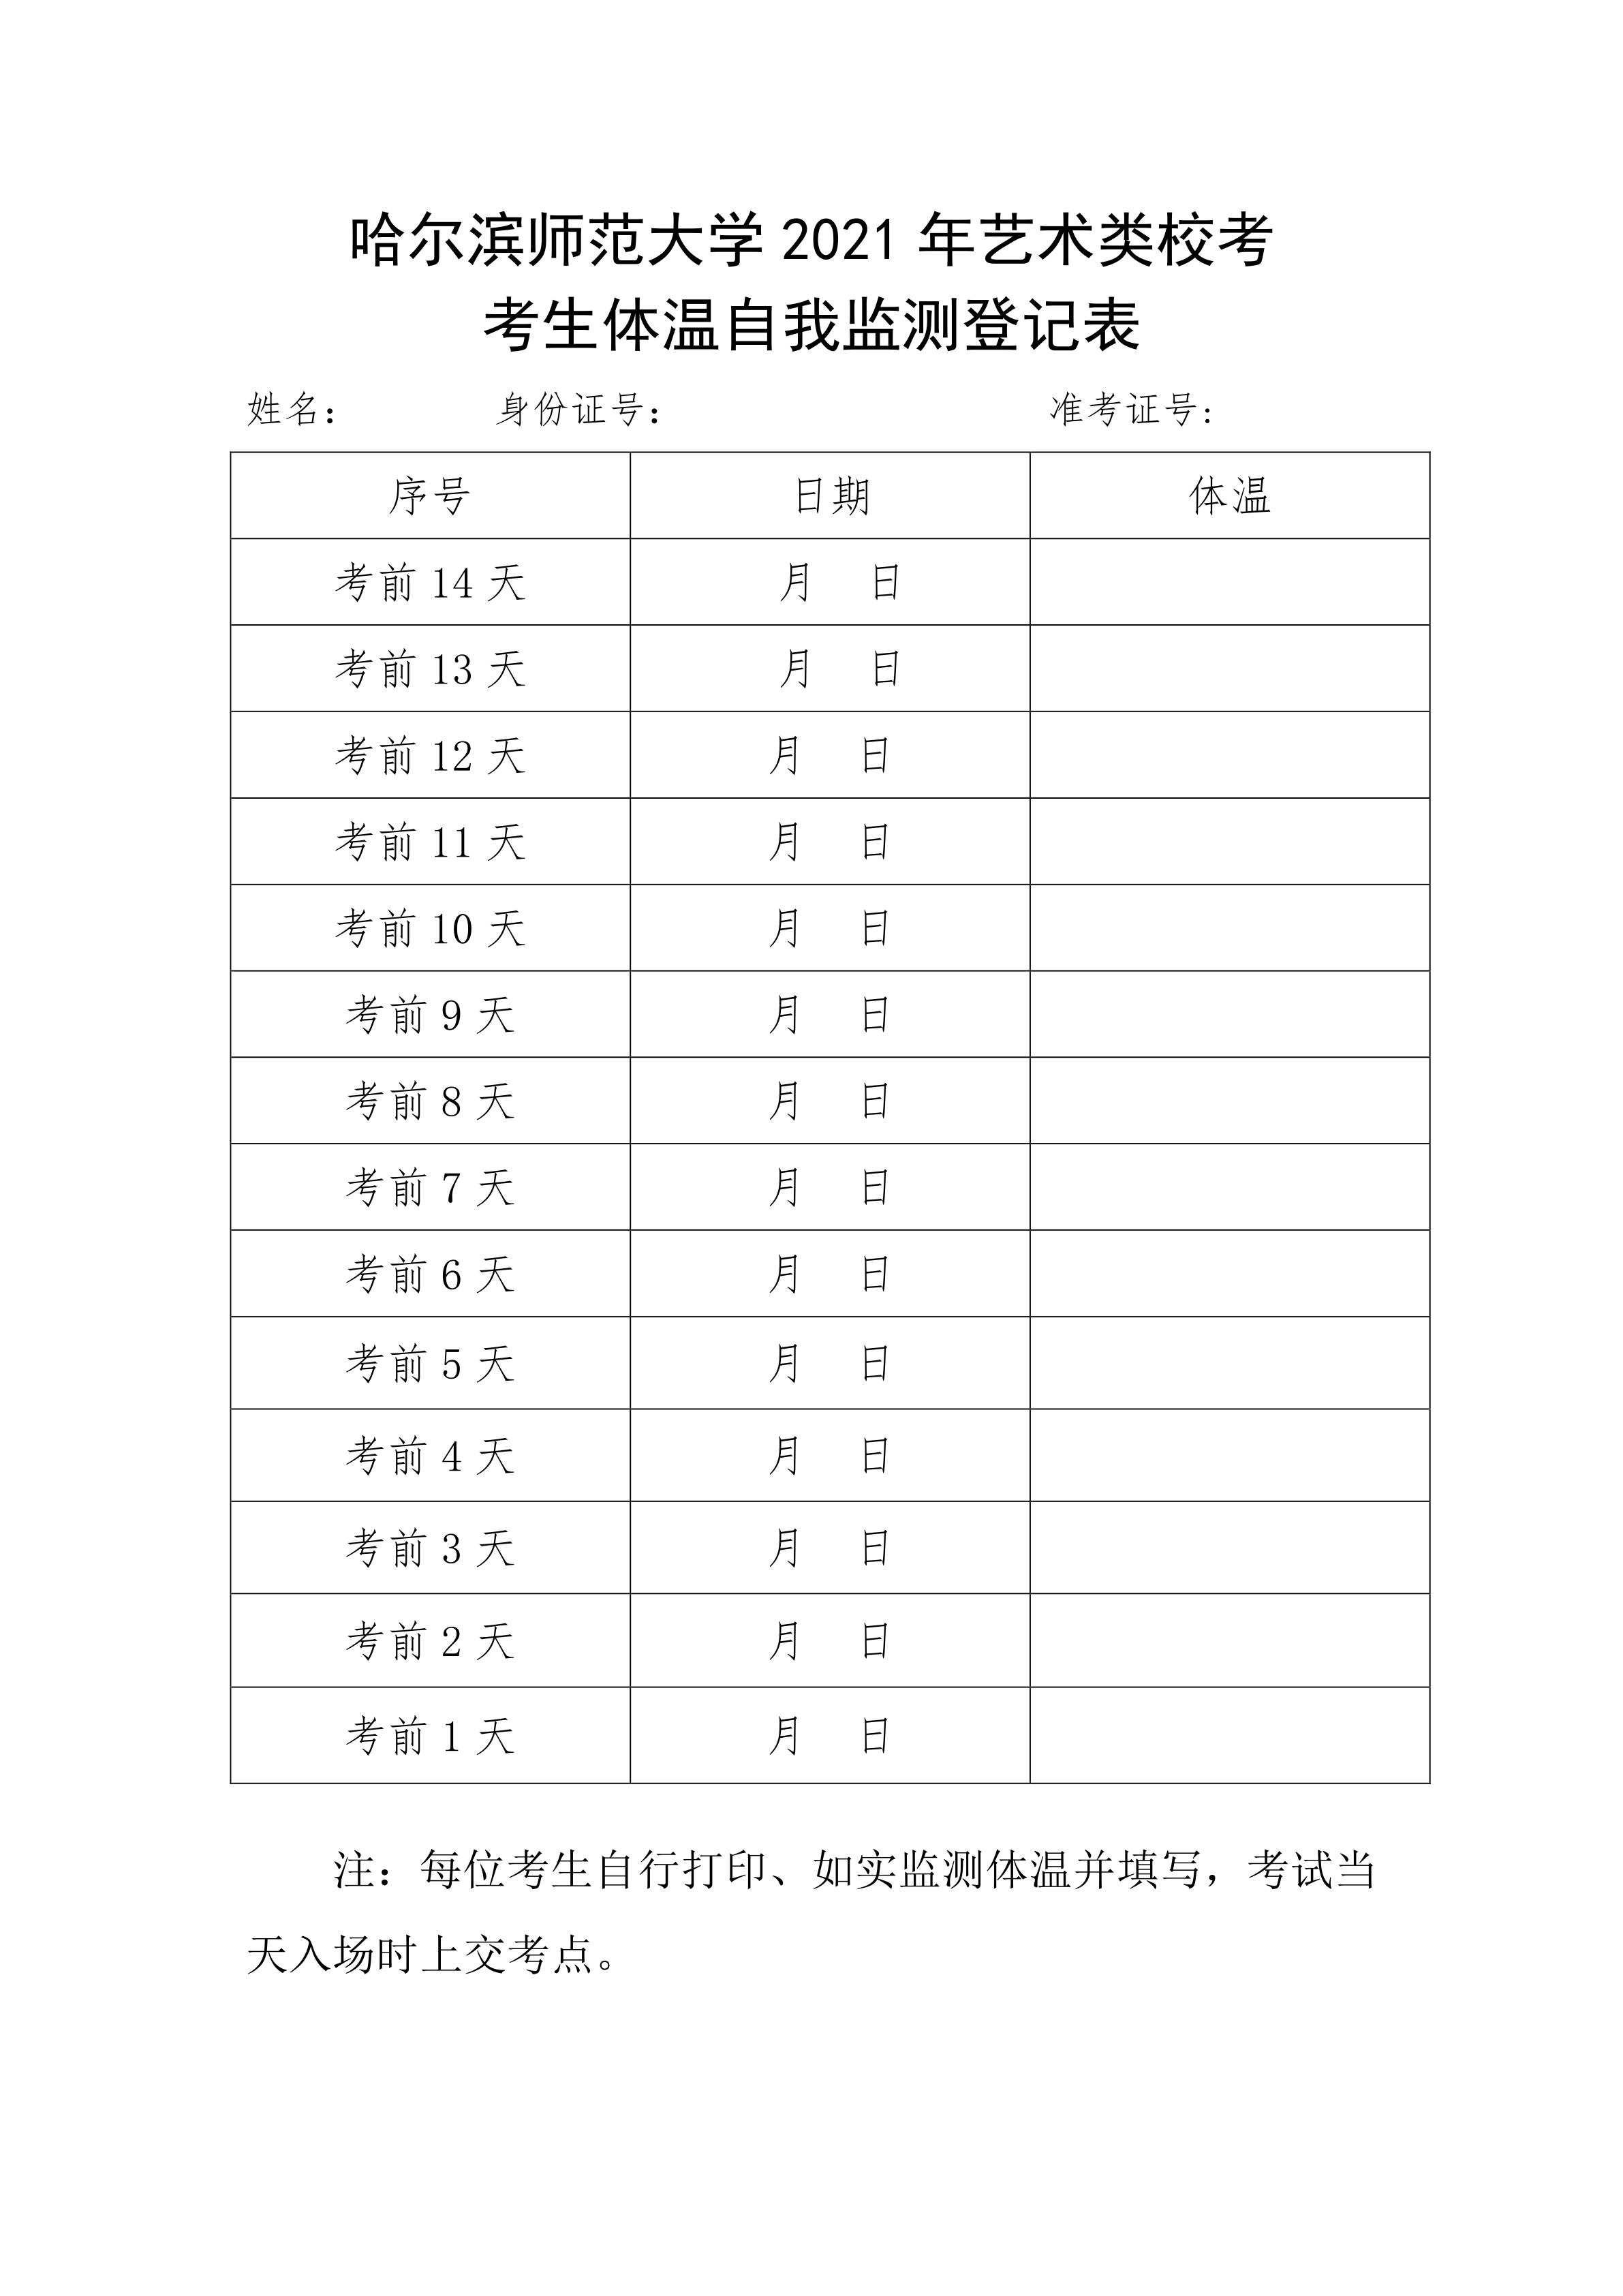 003-附件3：哈尔滨师范大学2021年艺术类校考考生体温自我监测登记表_1.png